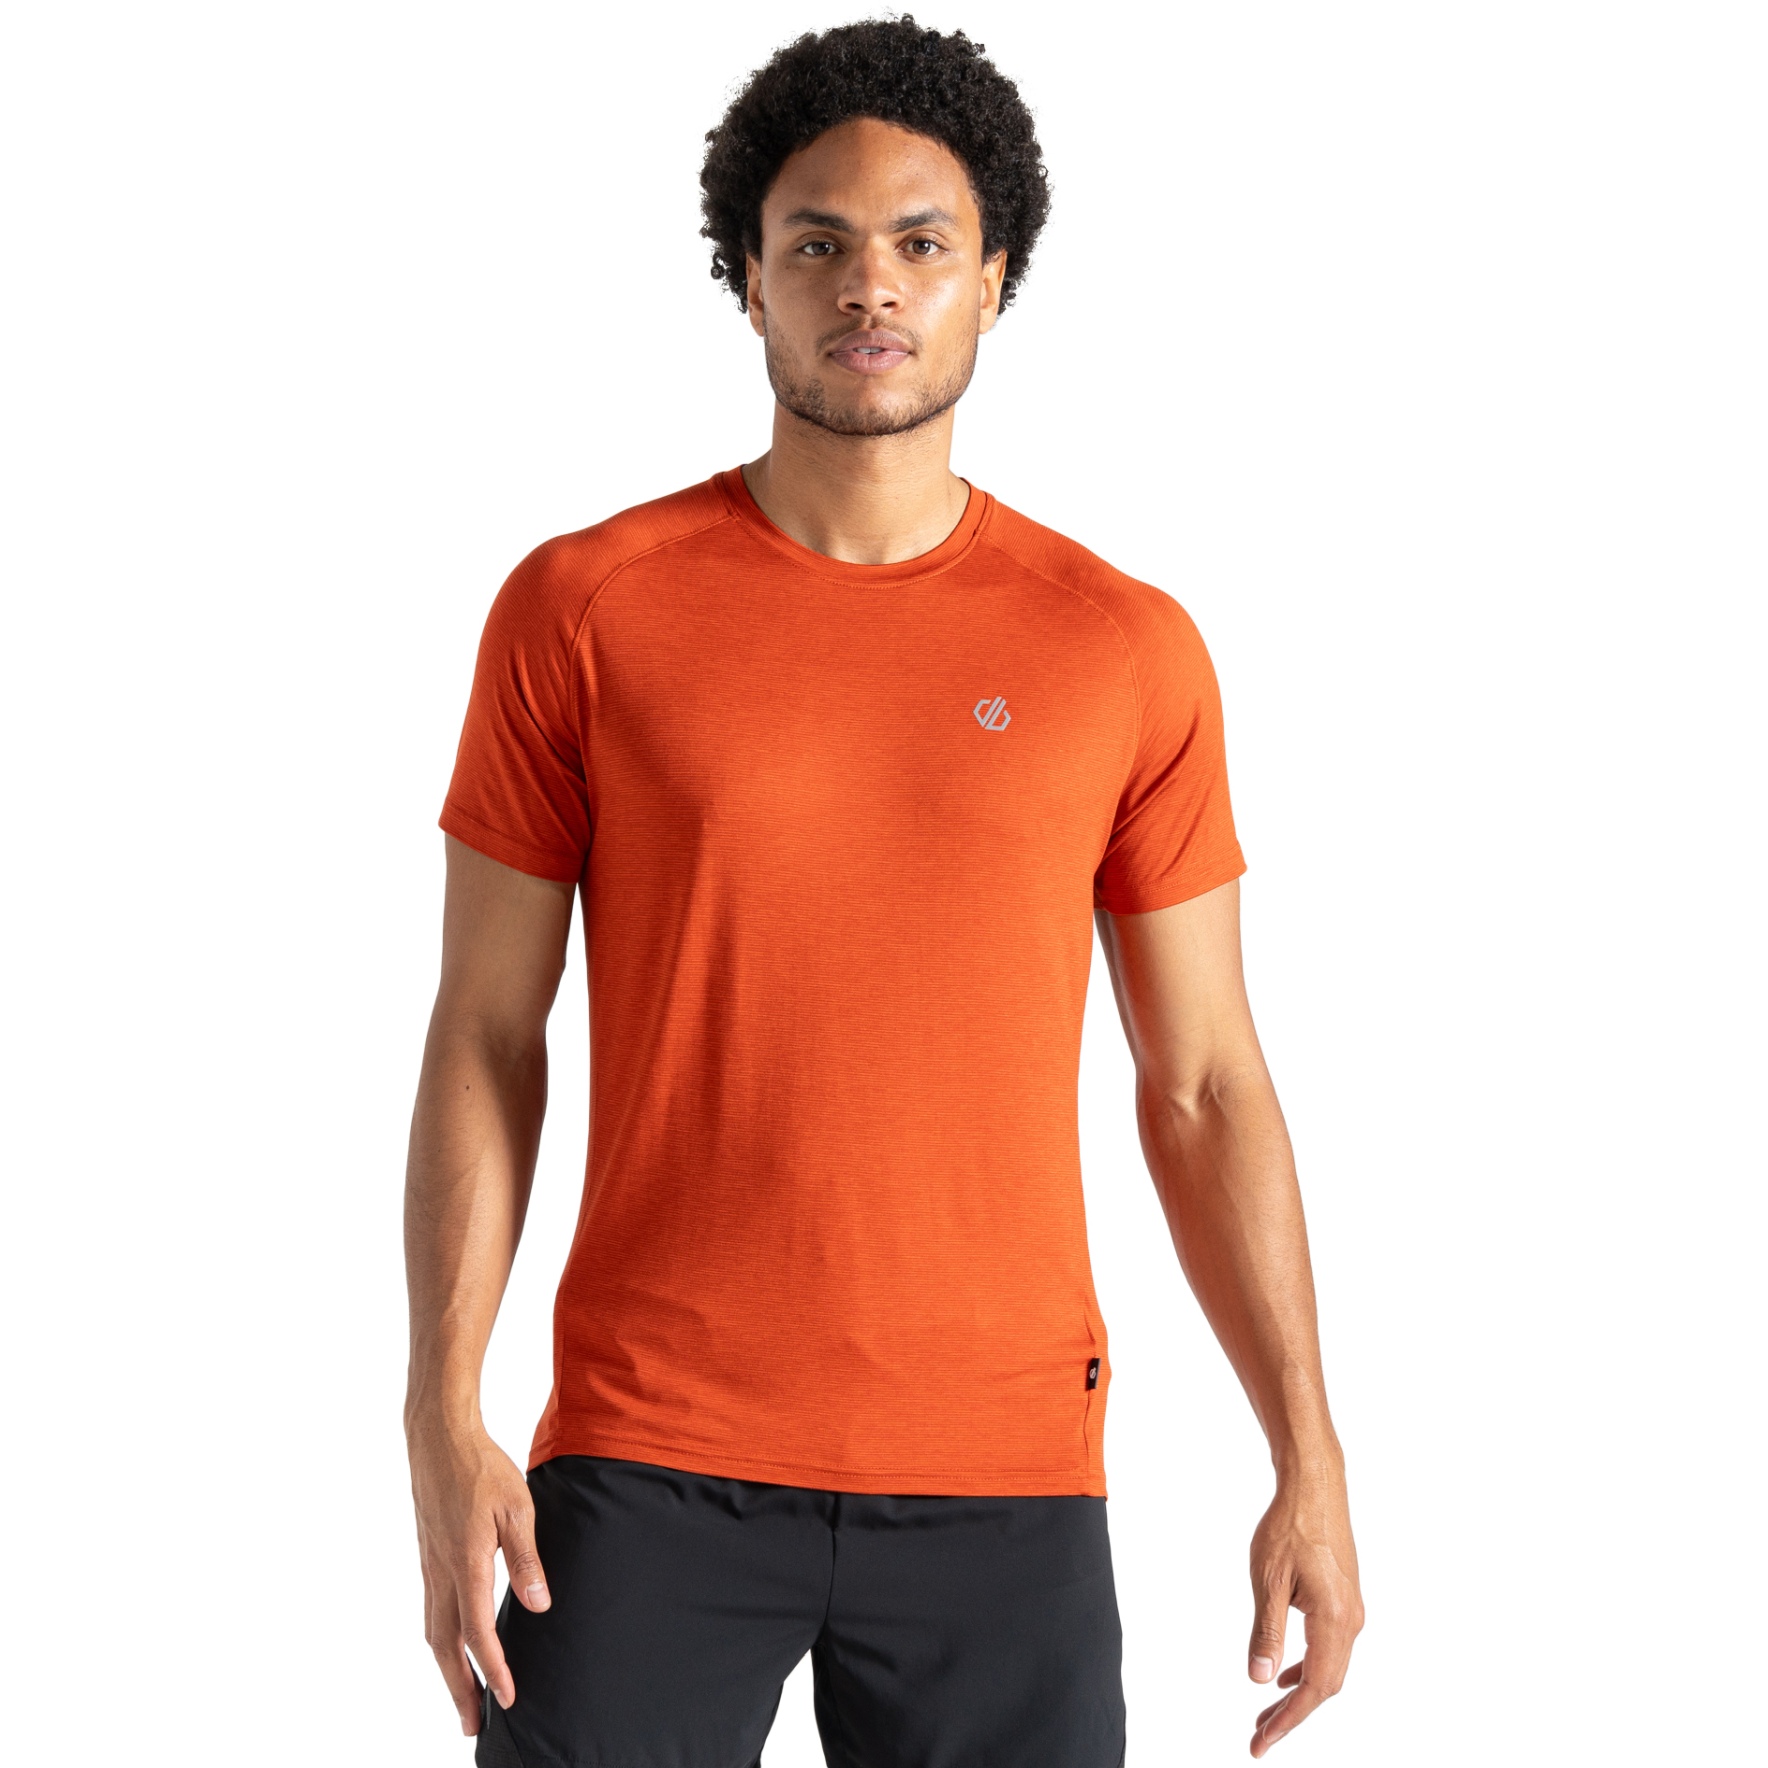 Produktbild von Dare 2b Persist T-Shirt Herren - I29 Cinnamon Marl